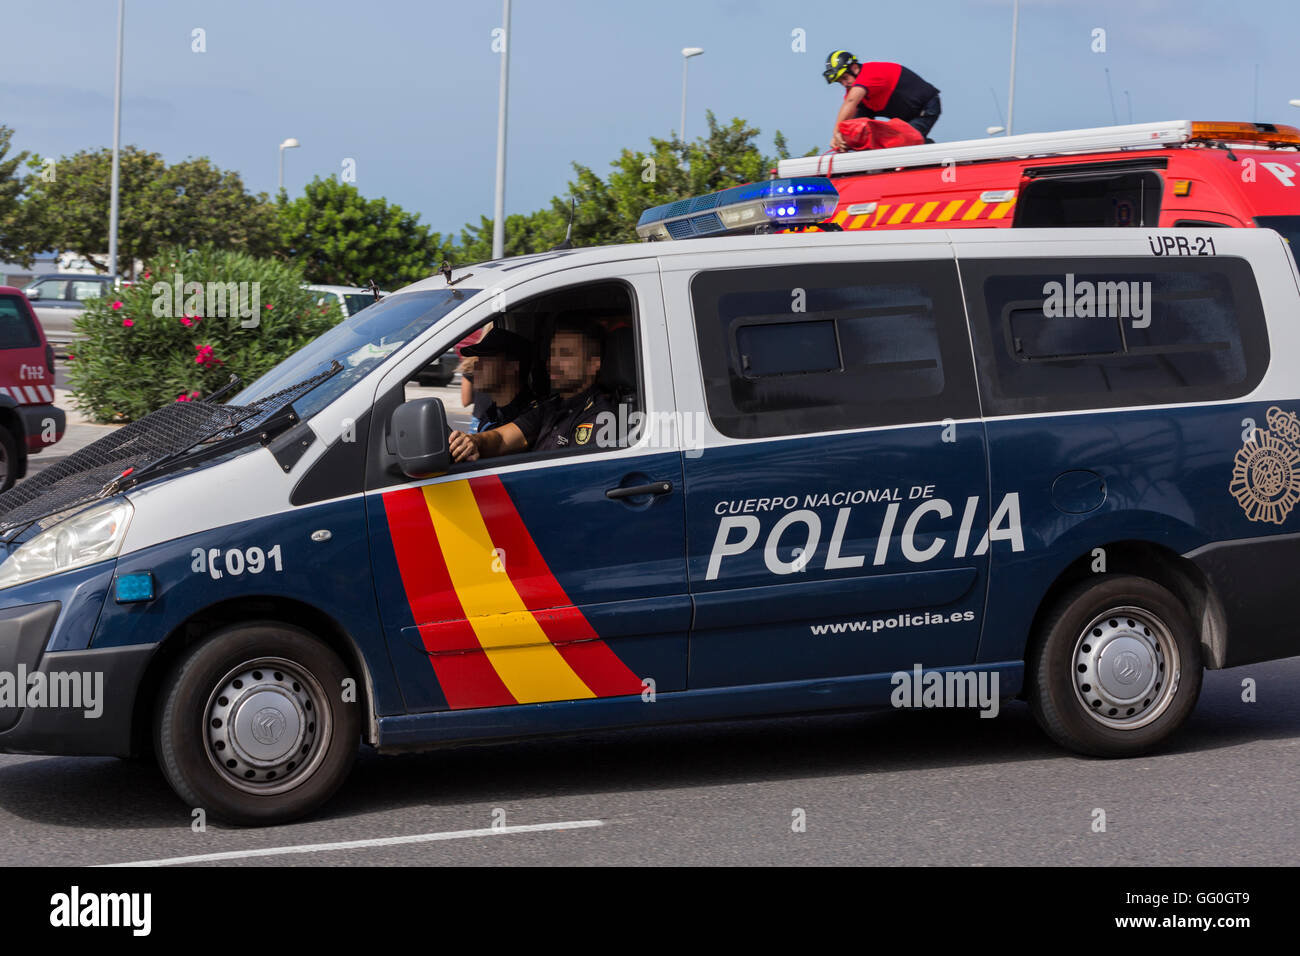 Spanische nationale Polizei-Fahrzeug mit Agenten Gesichter verpixelt Stockfoto